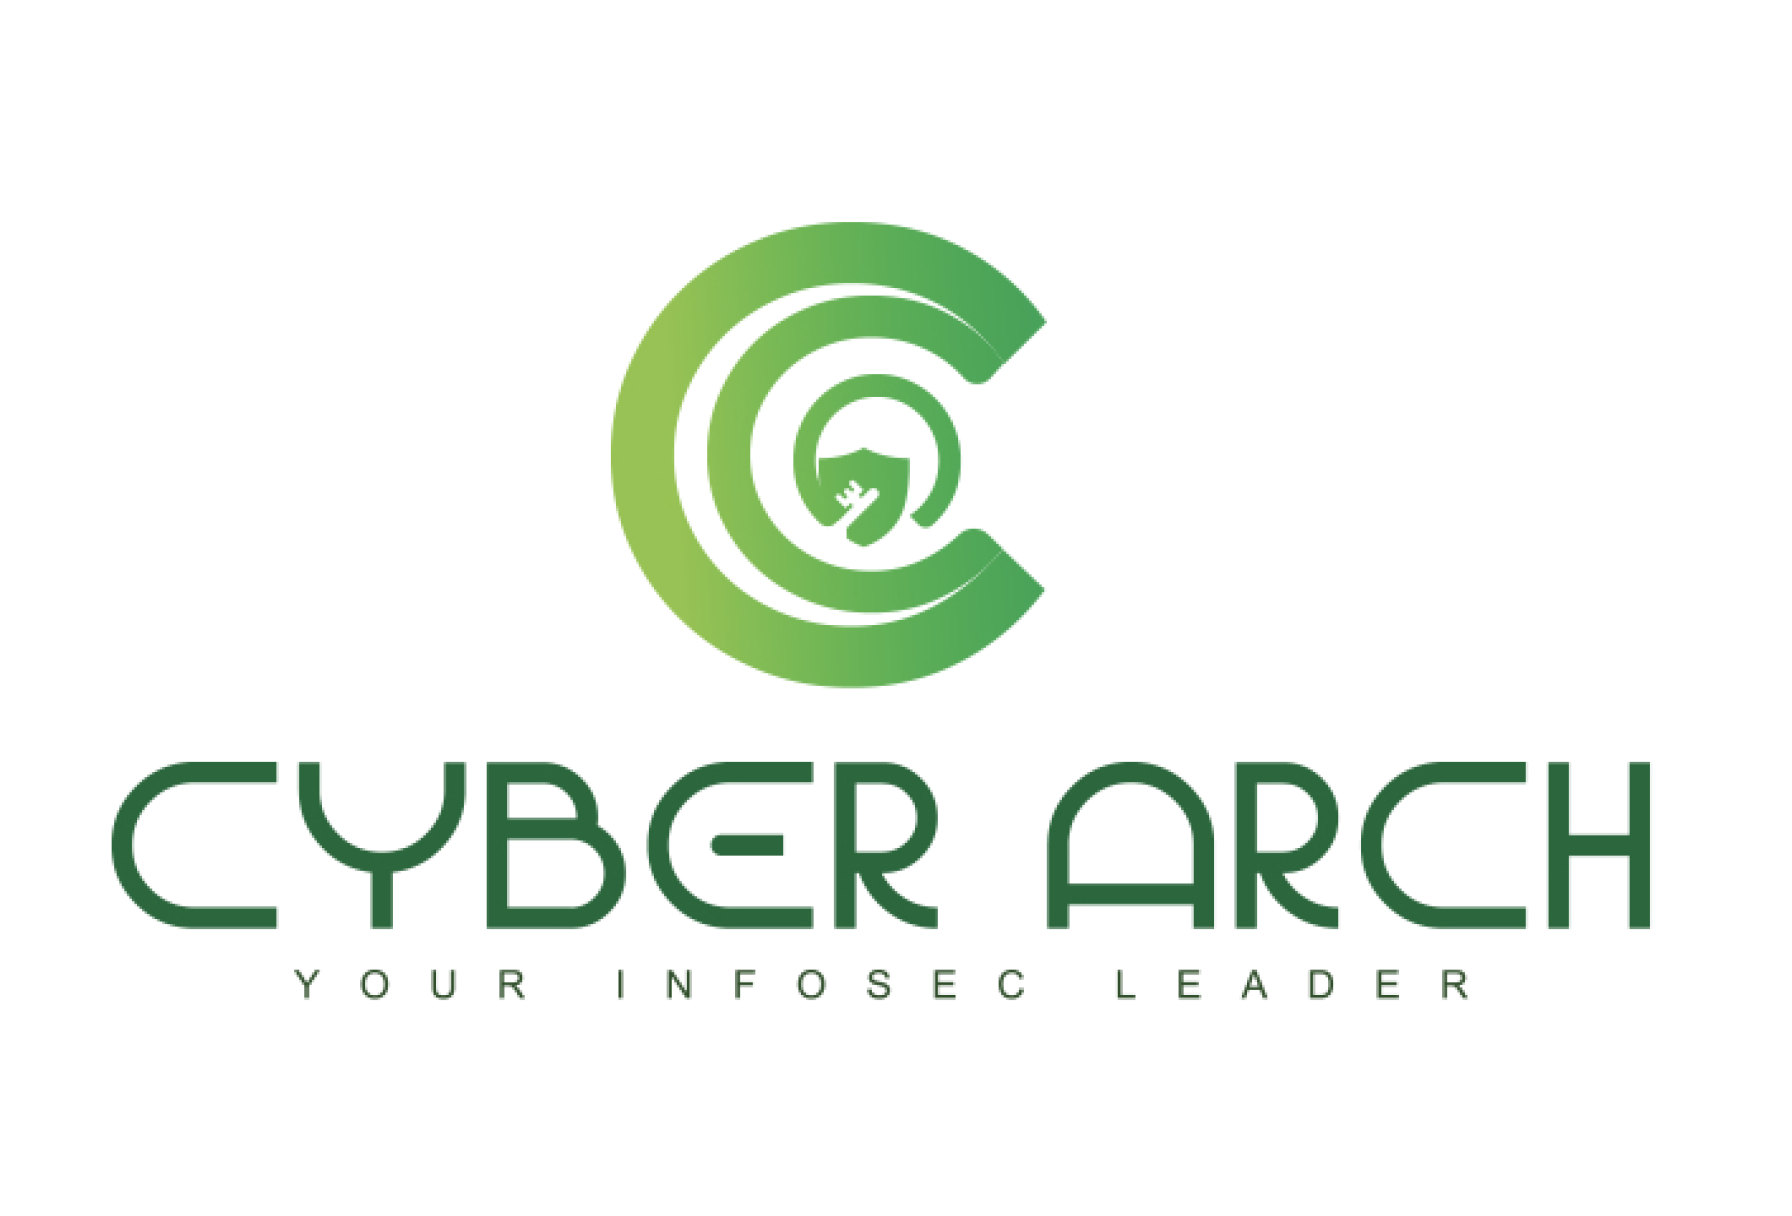 Cyberarch